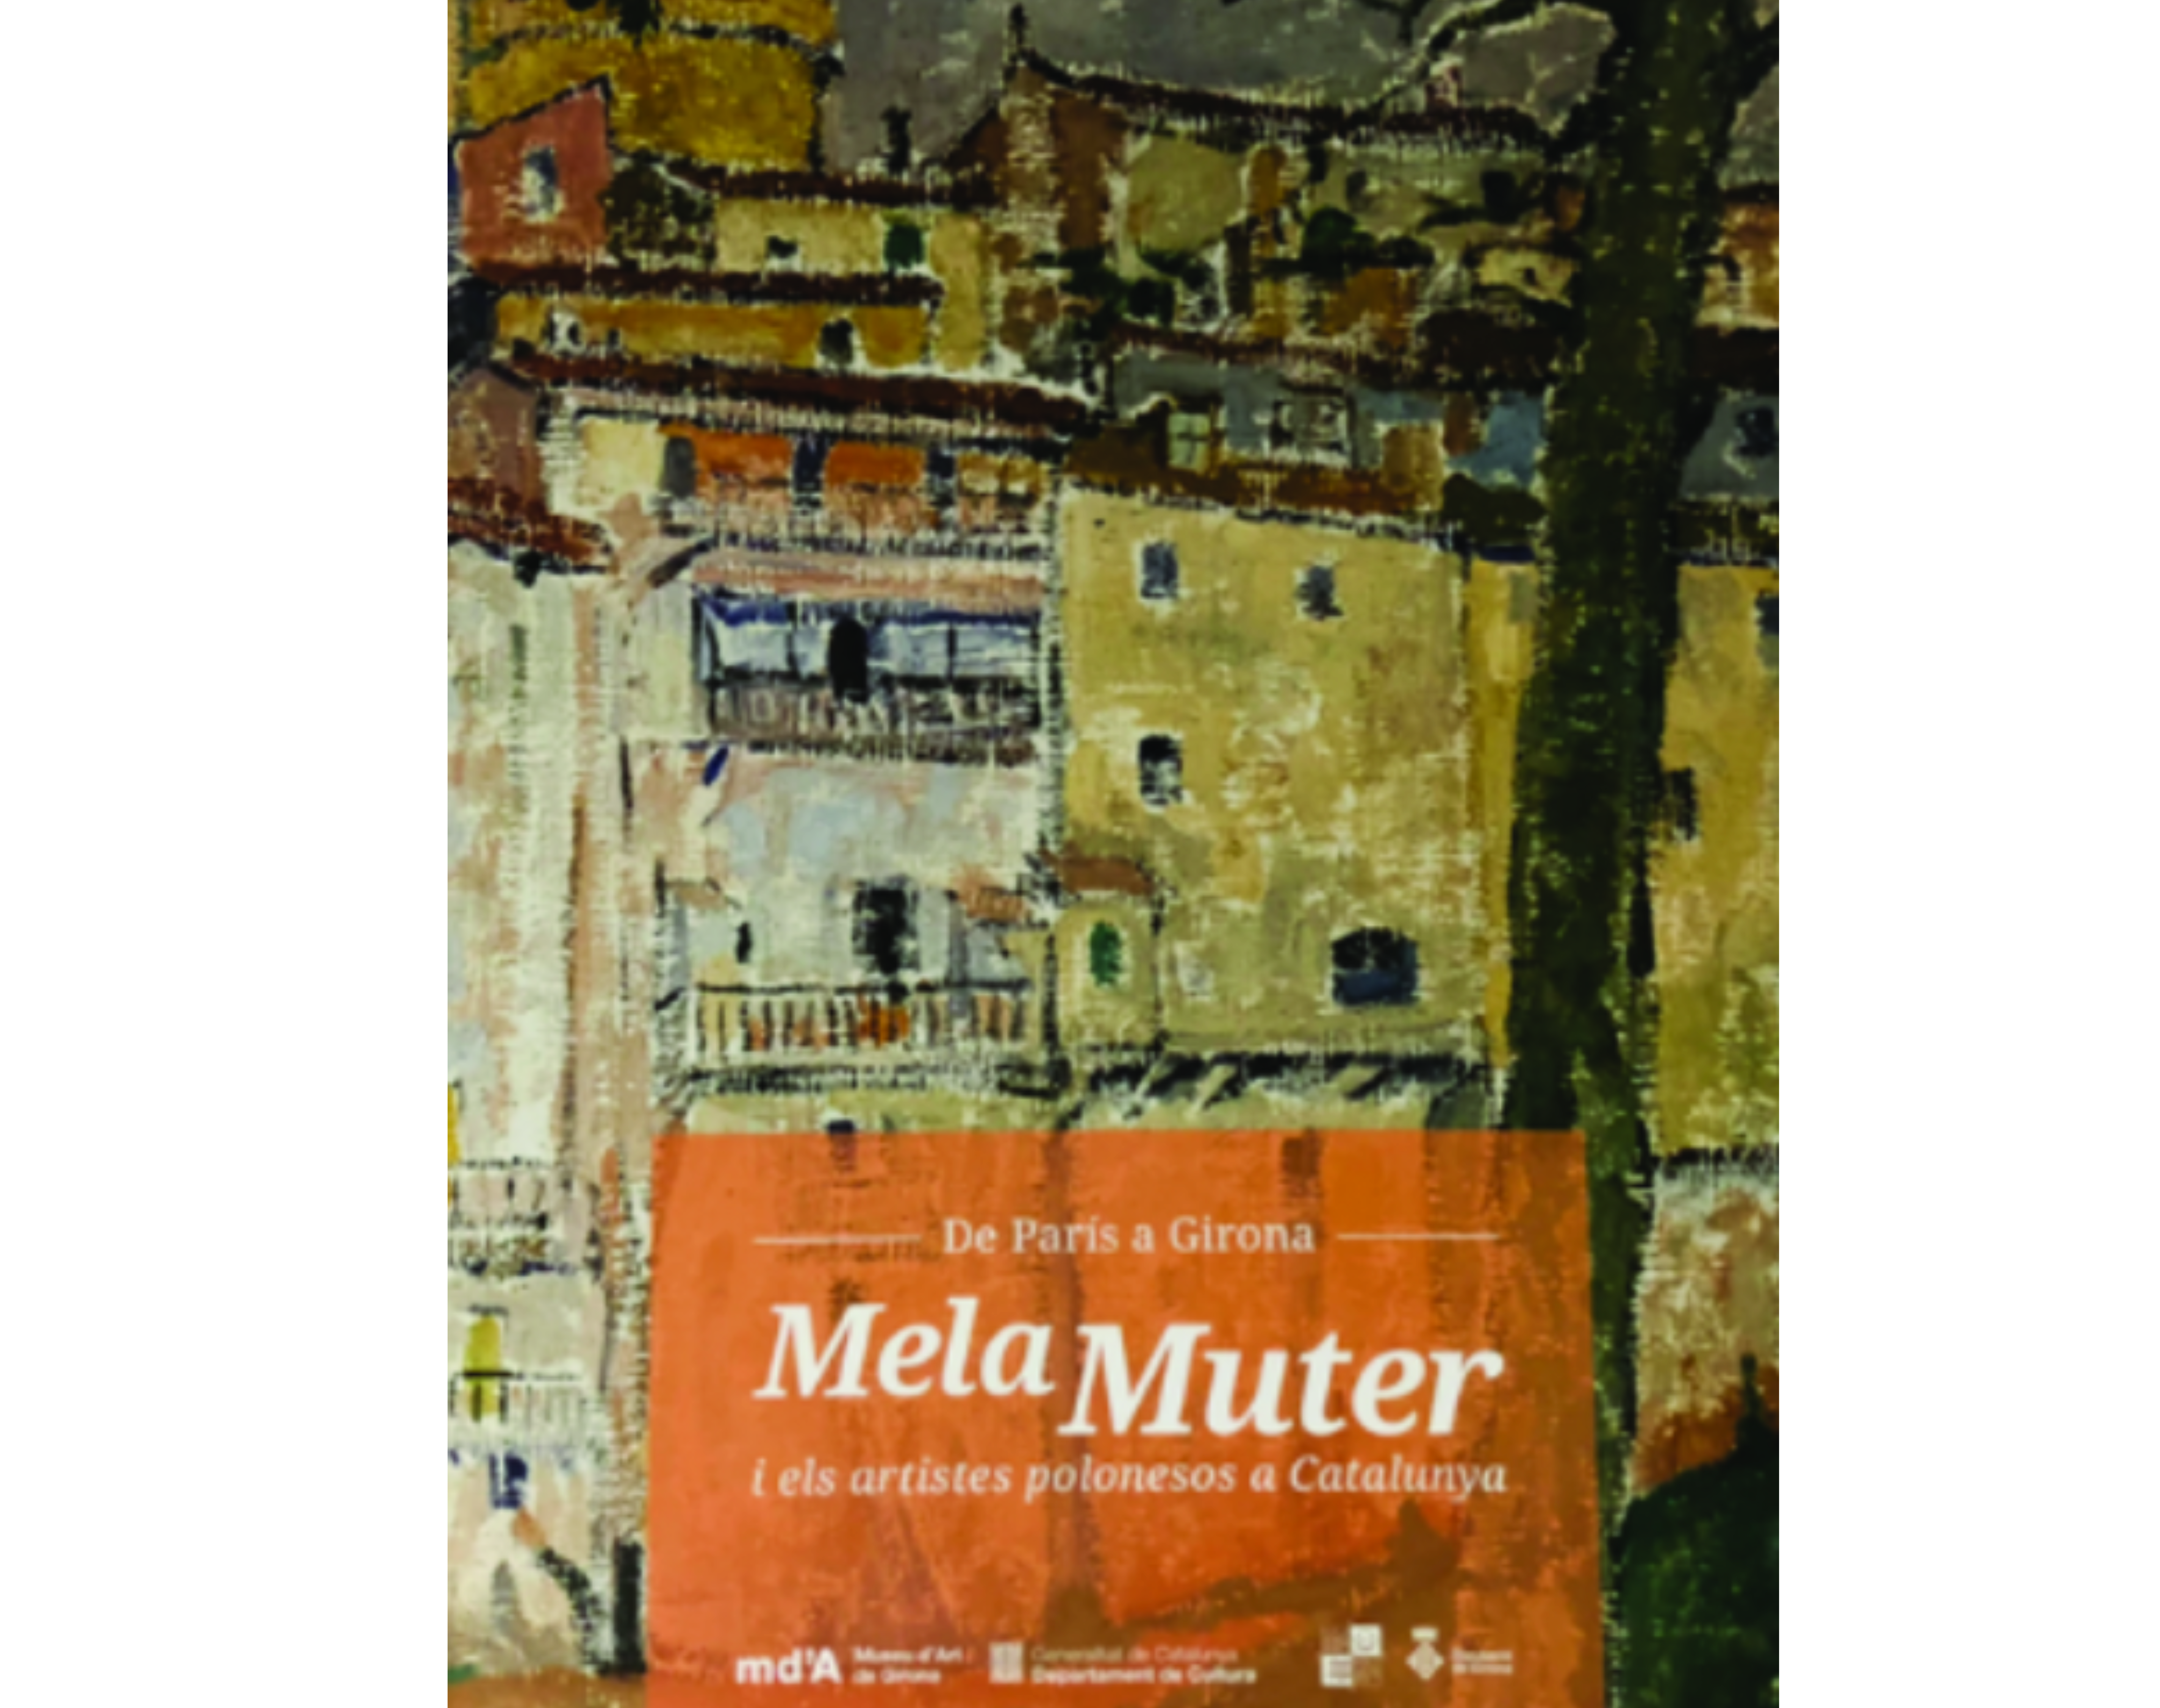 Fotografia przedstawiająca \"Catalogue De París a Girona Mela Muter i els artistes polonesos a Catalunya (From Paris to Girona. Mela Muter and Polish artists in Catalonia)\" - publication by the Polonica Institute